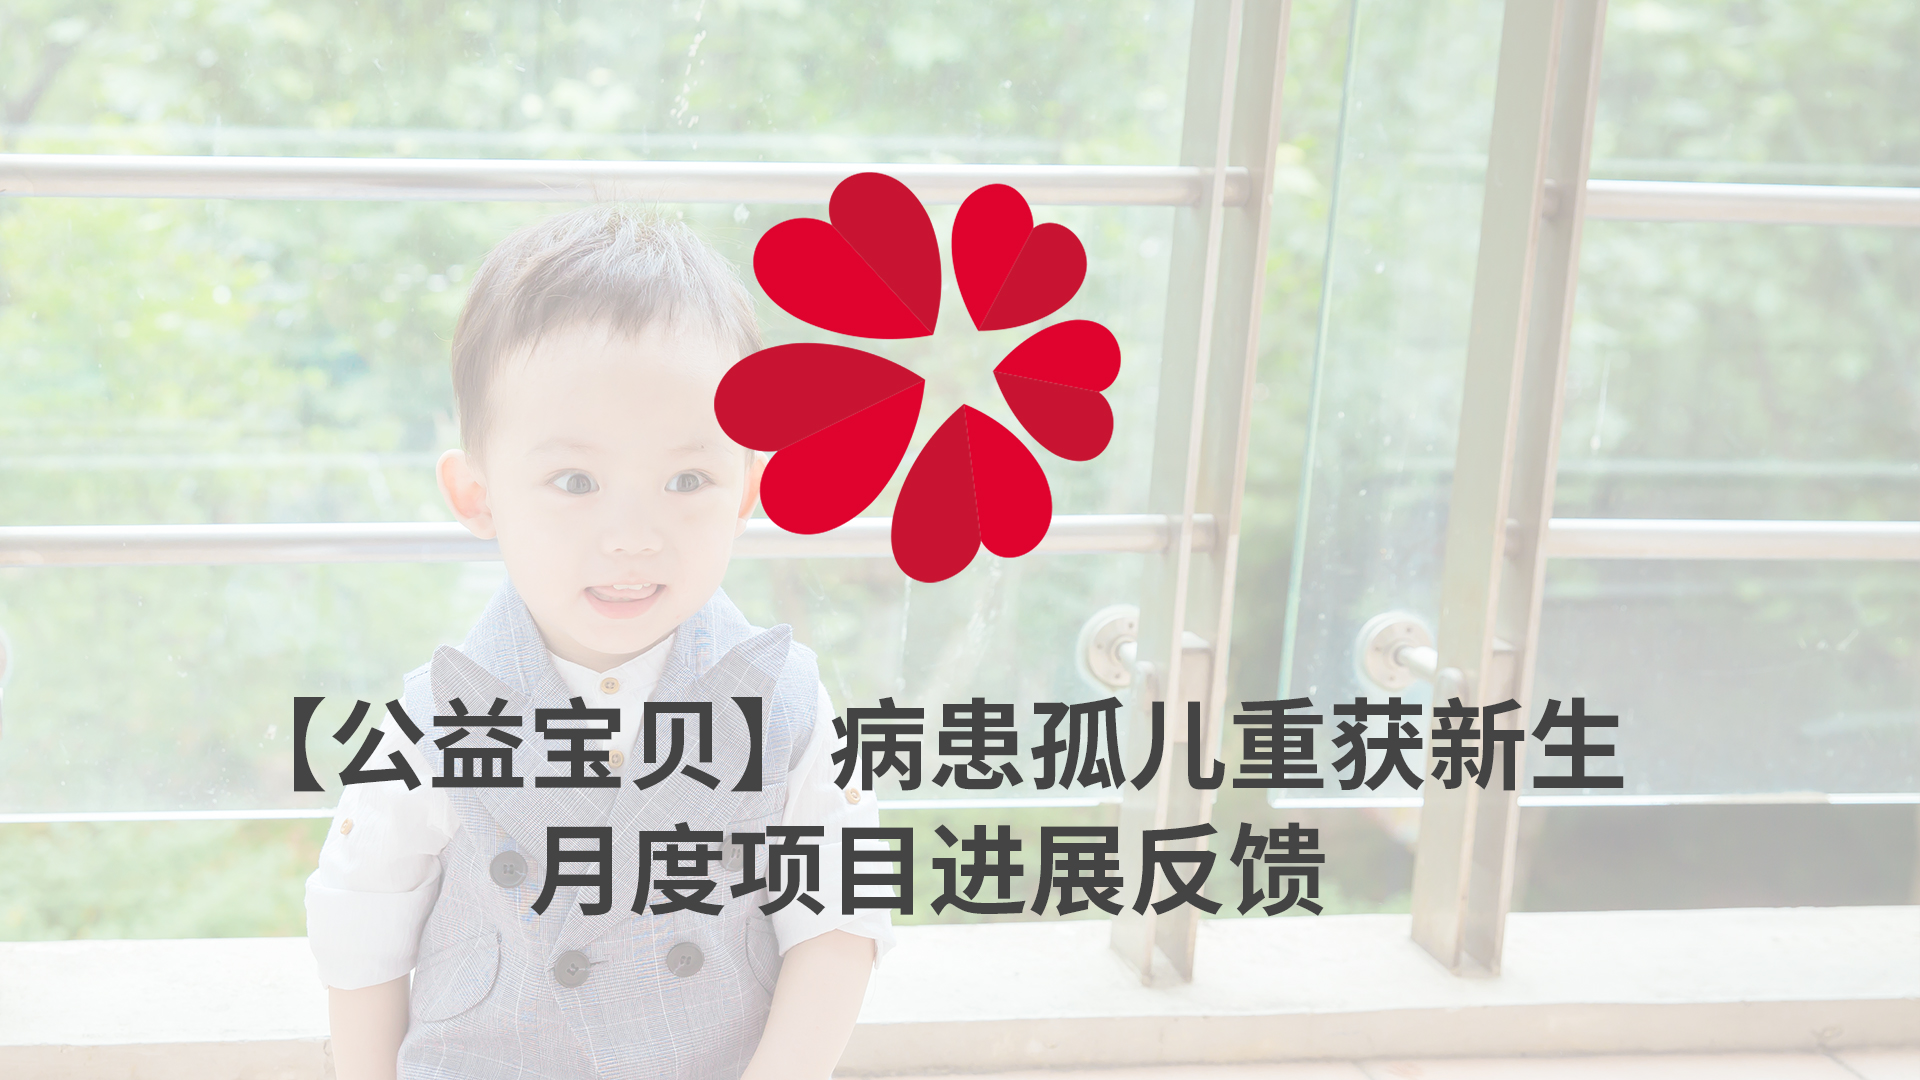 【XIN 益佰项目】病患孤儿重获新生 2023 年 3 月项目进展反馈